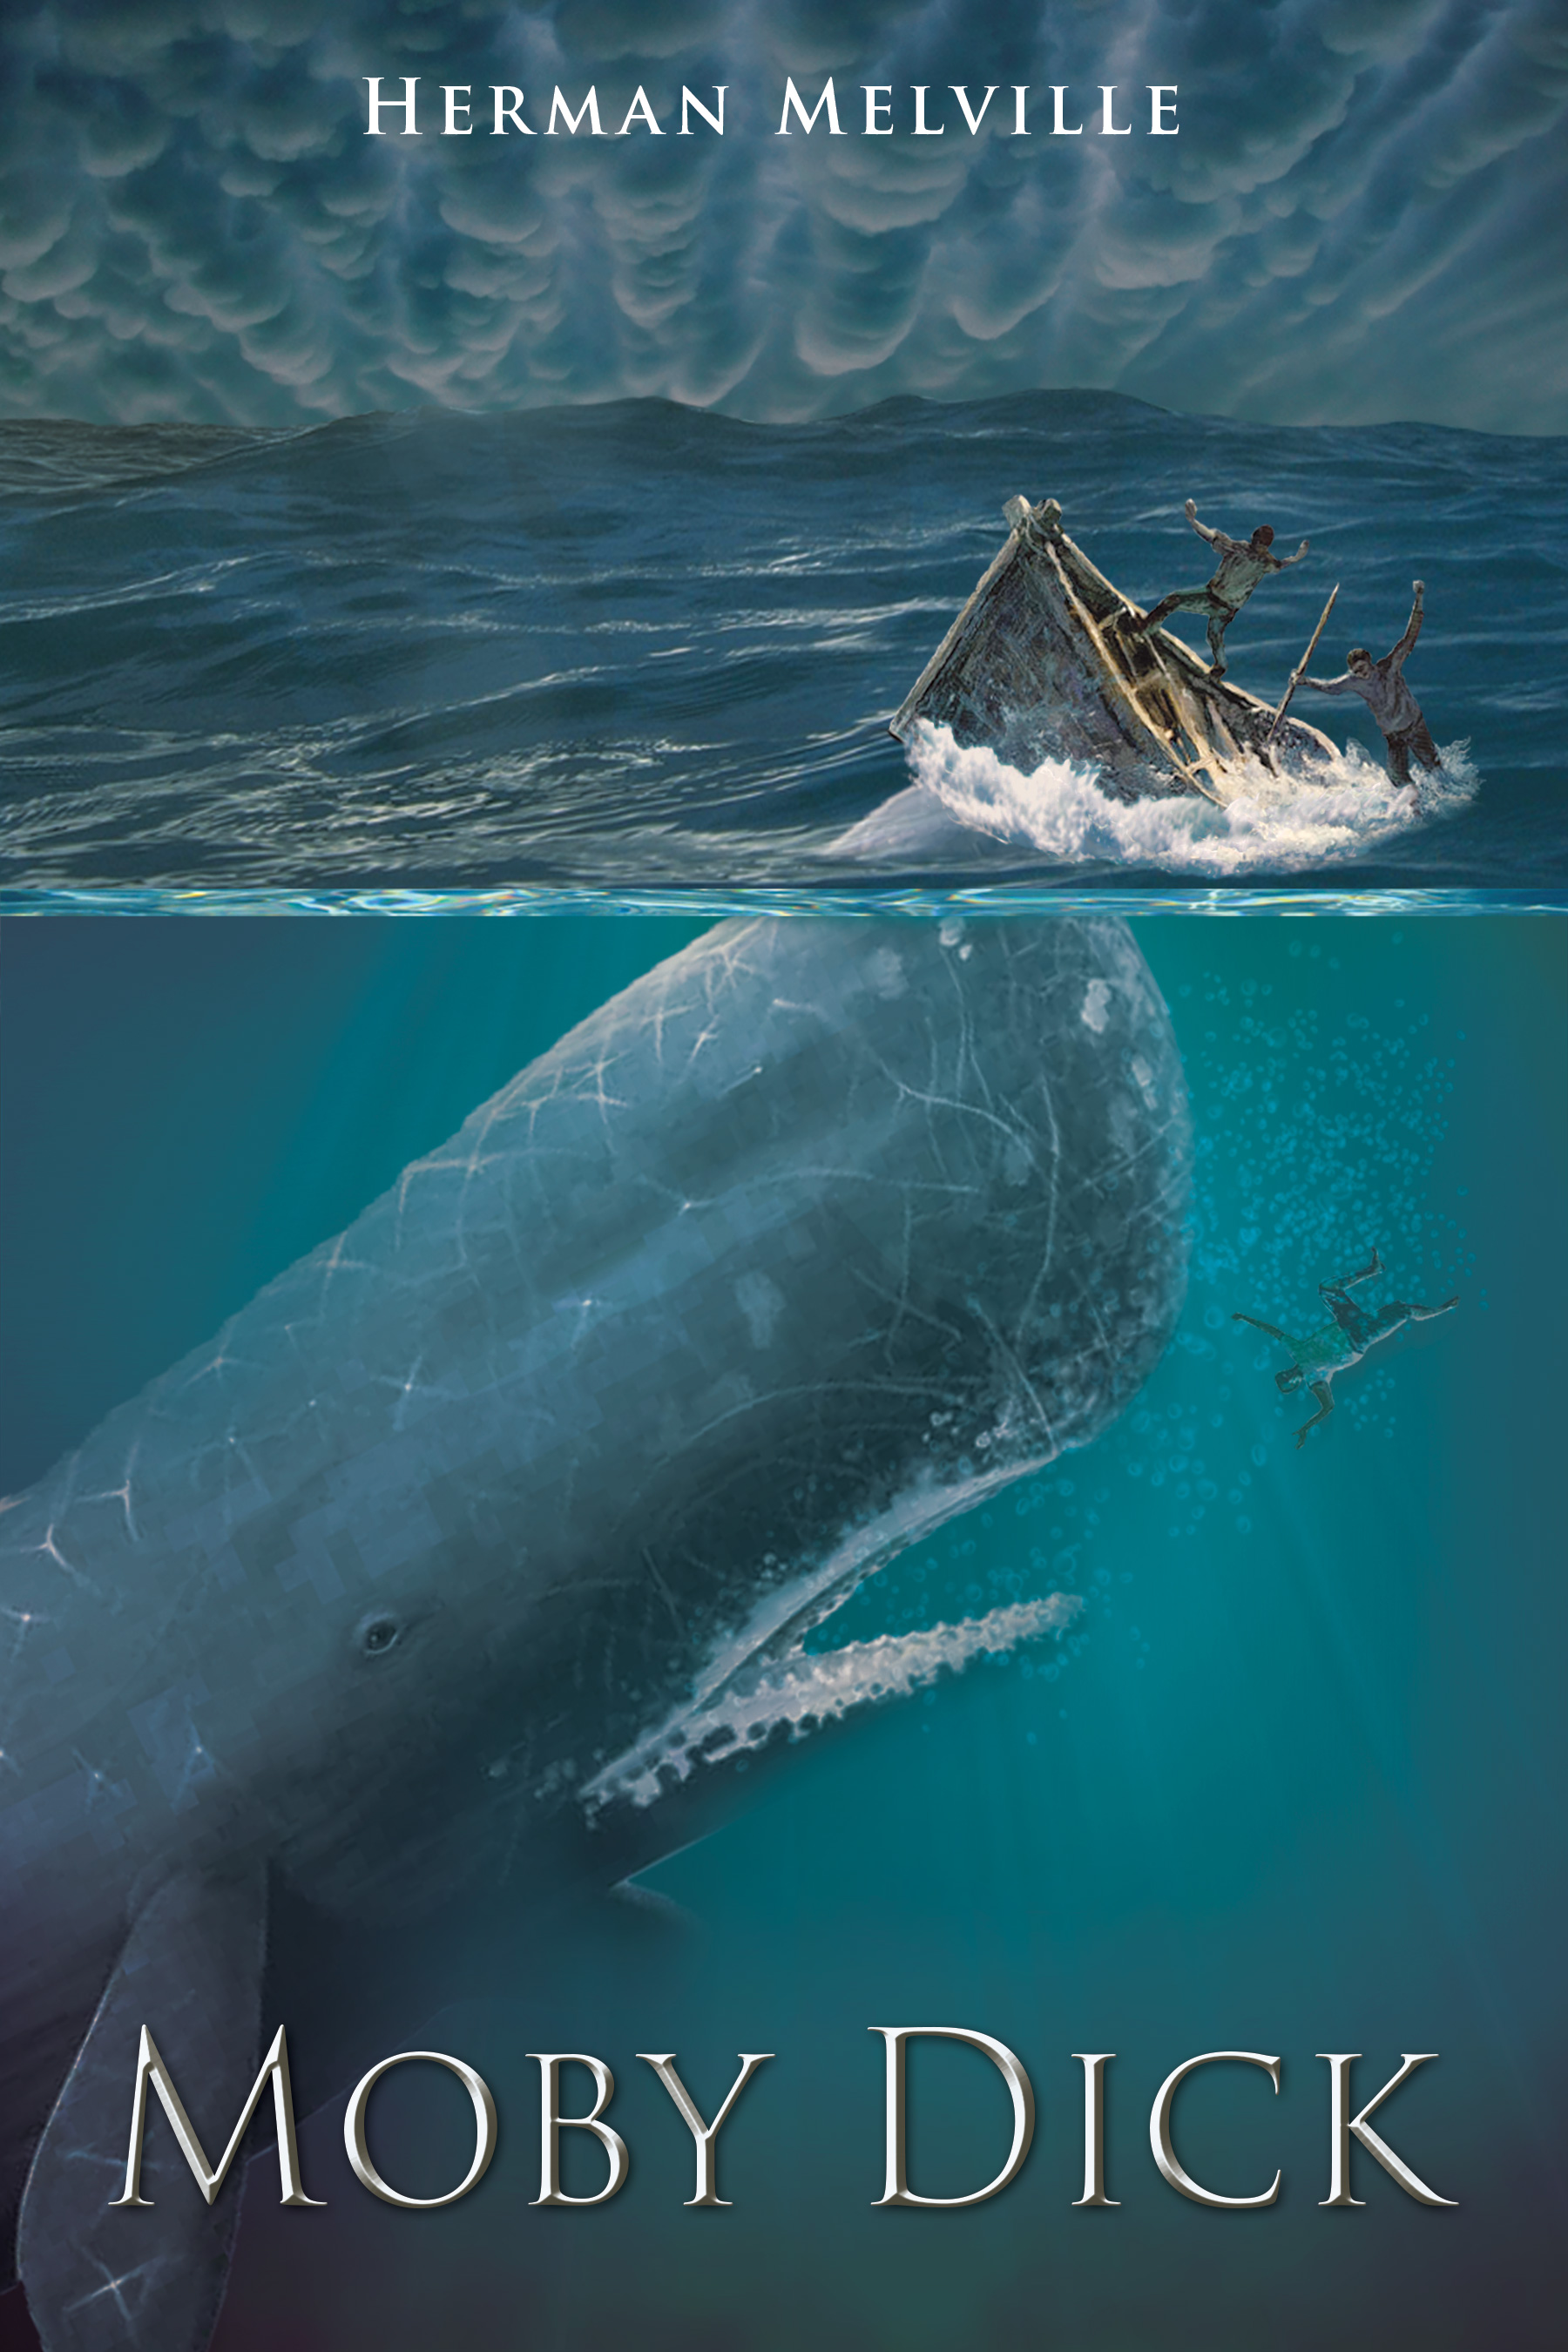 Herman Melville Y Su Eterna Moby Dick ~ Efemerides ~